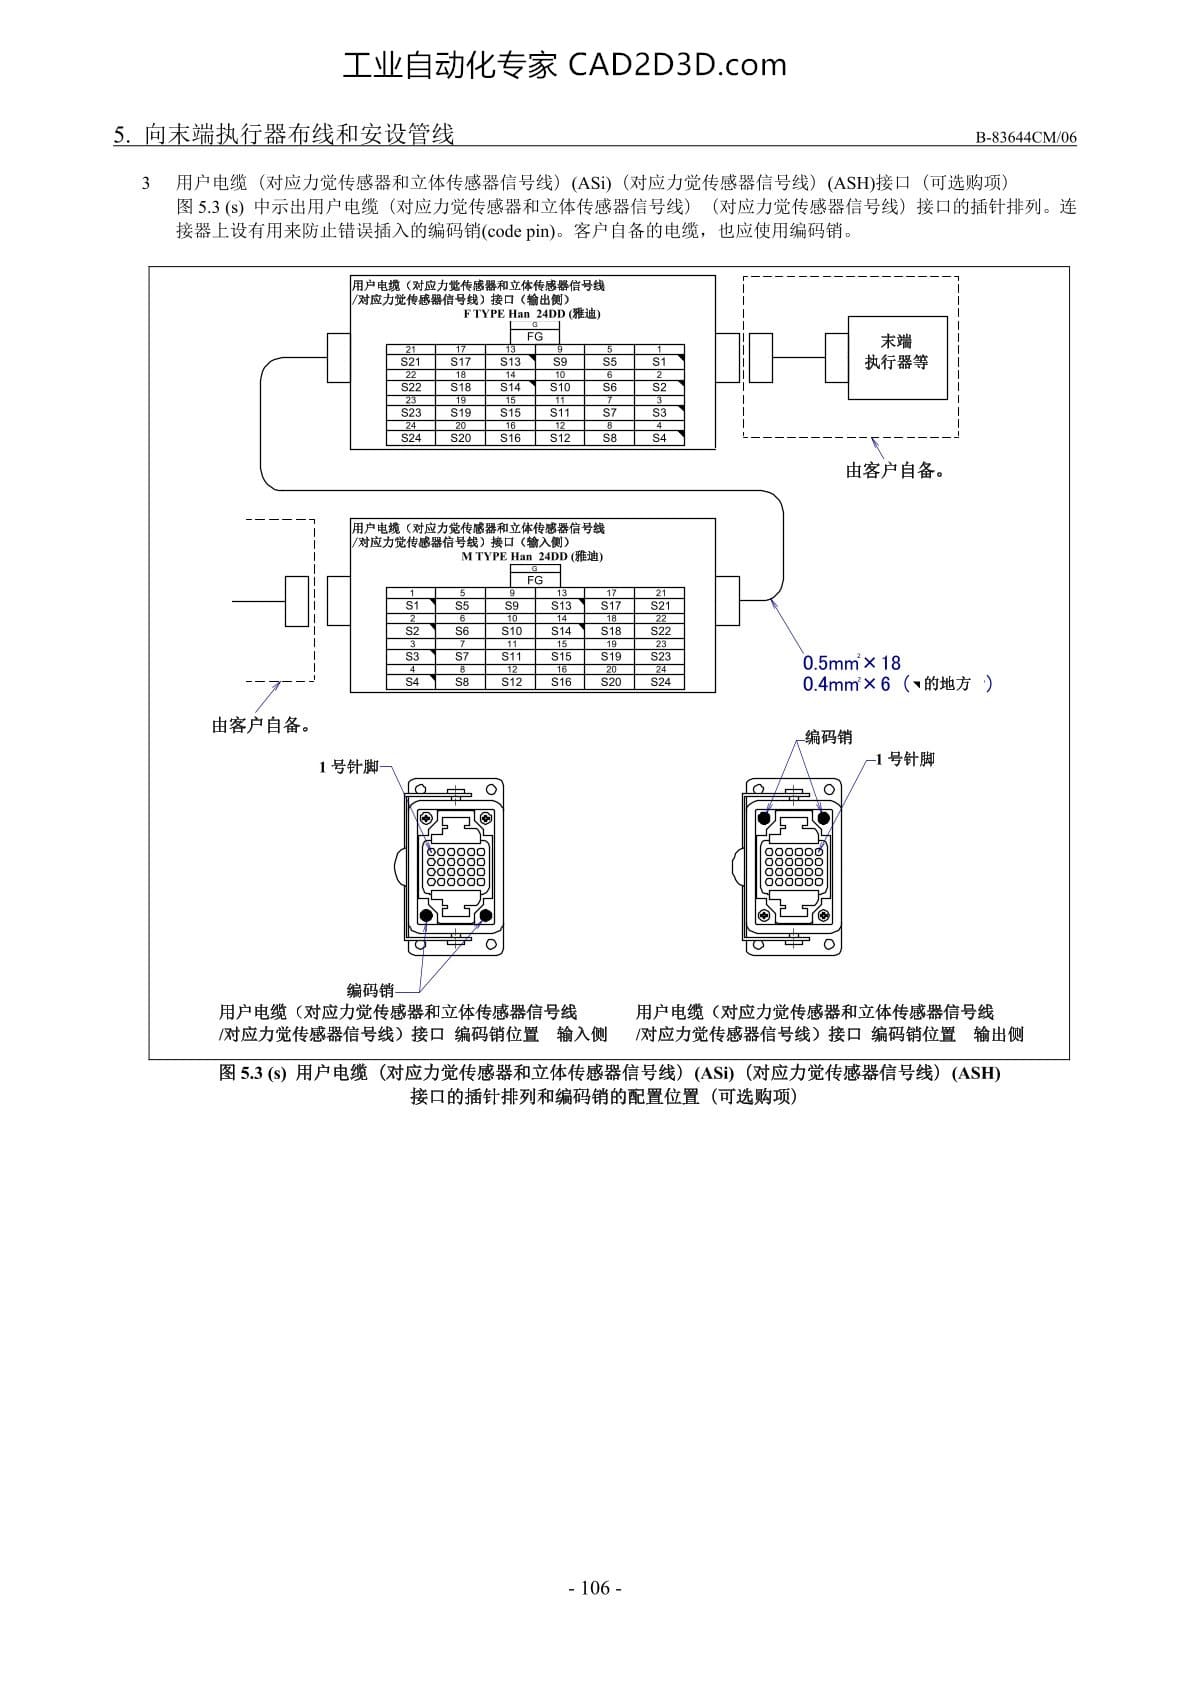 用户电缆（对应力觉传感器和立体传感器信号线）（ASi）(对应力觉传感器信号线)（ASH）接口的插针排列和编码销的配置位置